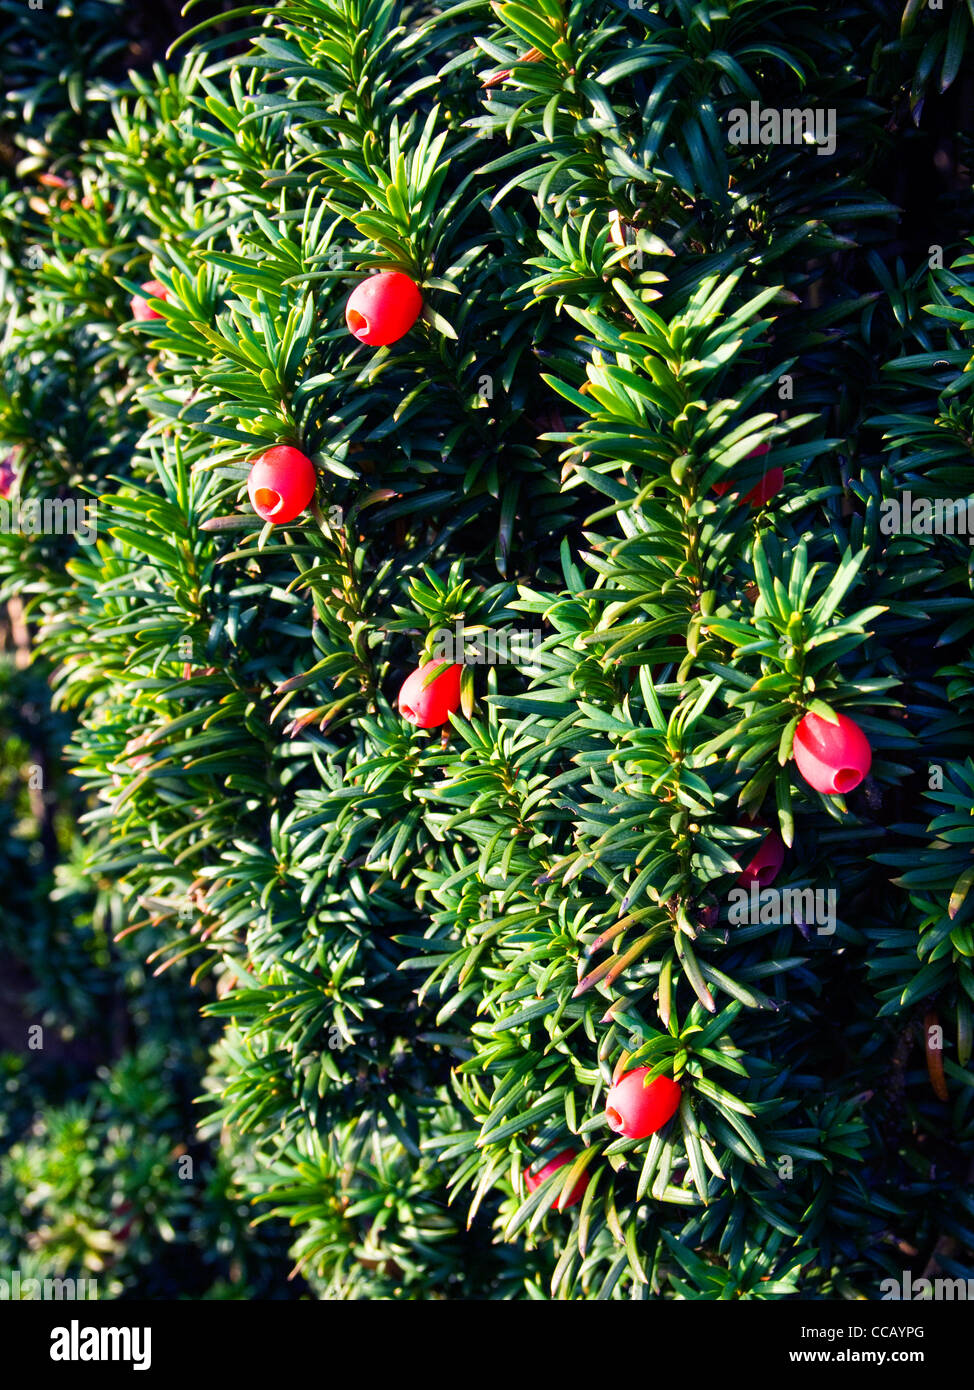 Red berries of the Irish Yew tree Stock Photo